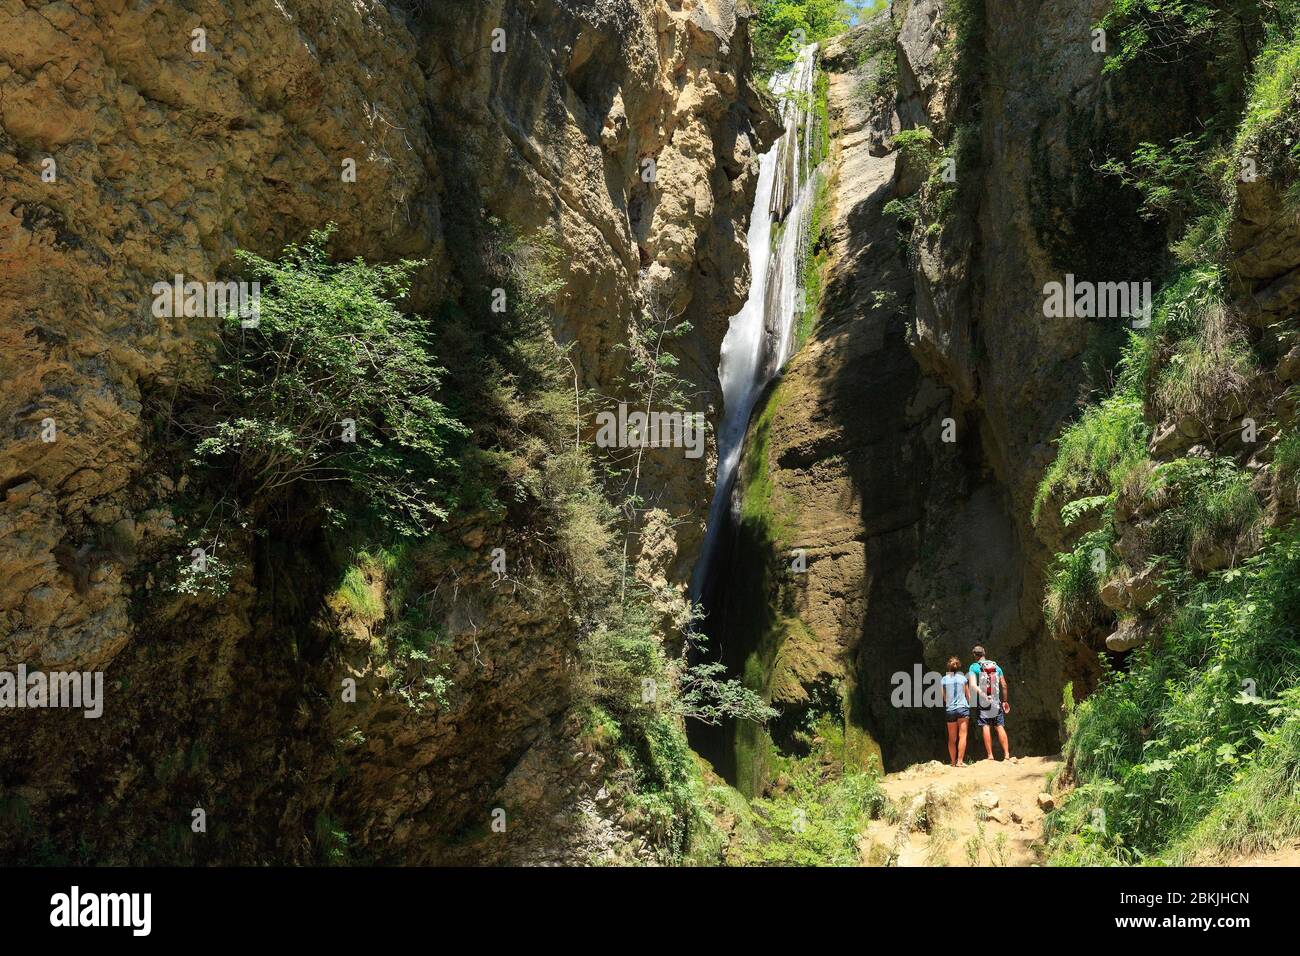 France, Drome, Vercors Regional Natural Park, Plan de Baix, La Druise waterfall, La Gervanne river, hike with La Pensee Sauvage, Detox center Stock Photo